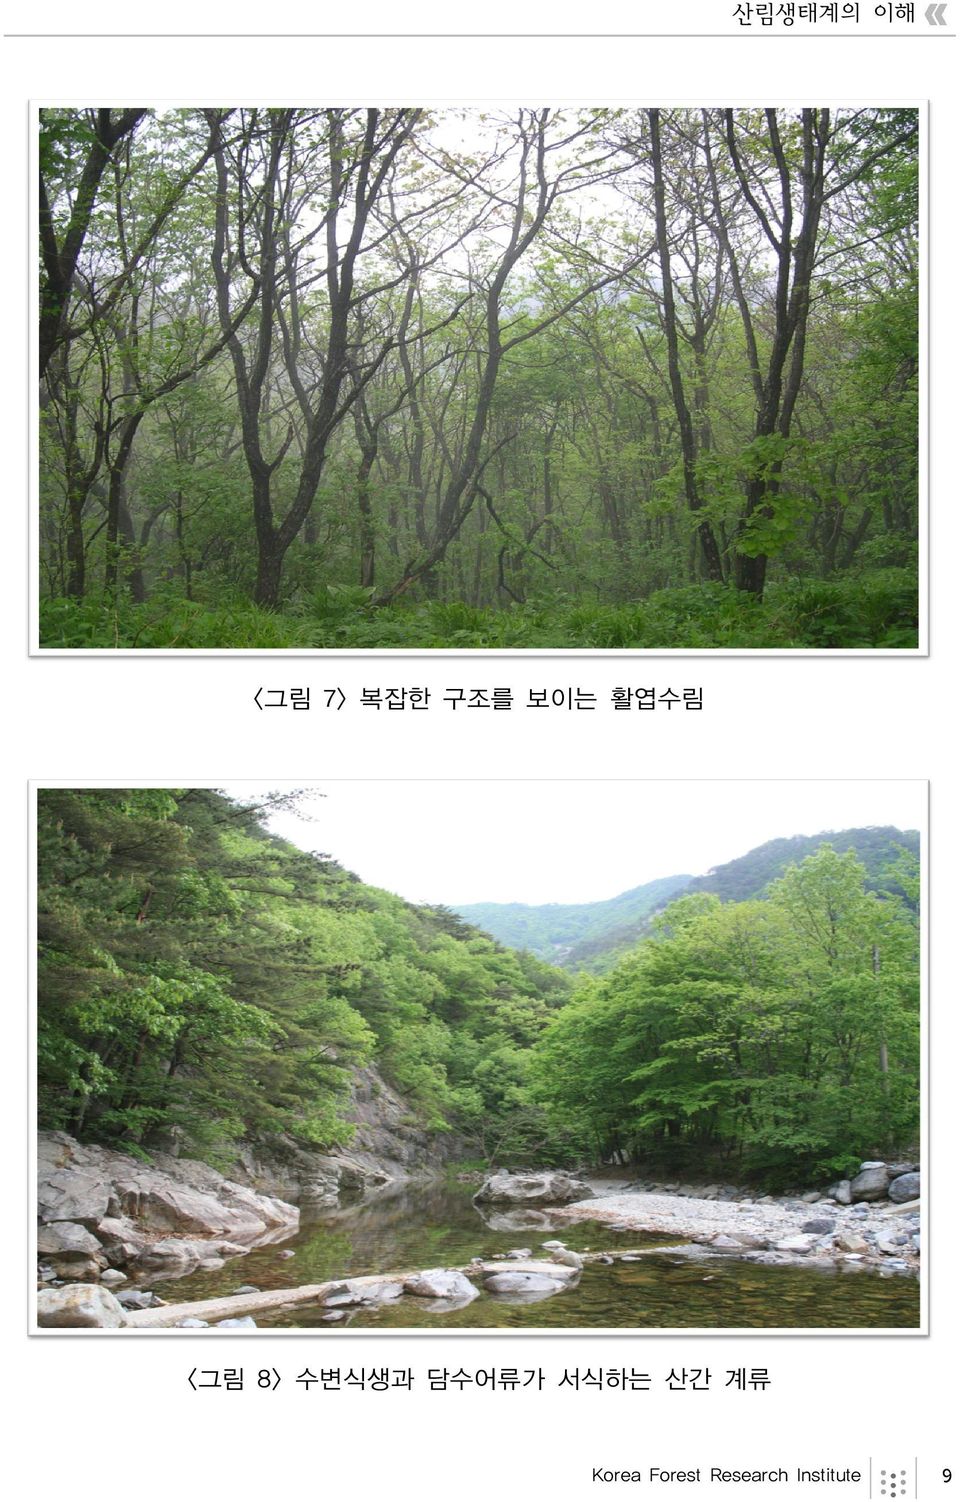 담수어류가 서식하는 산간 계류 Korea